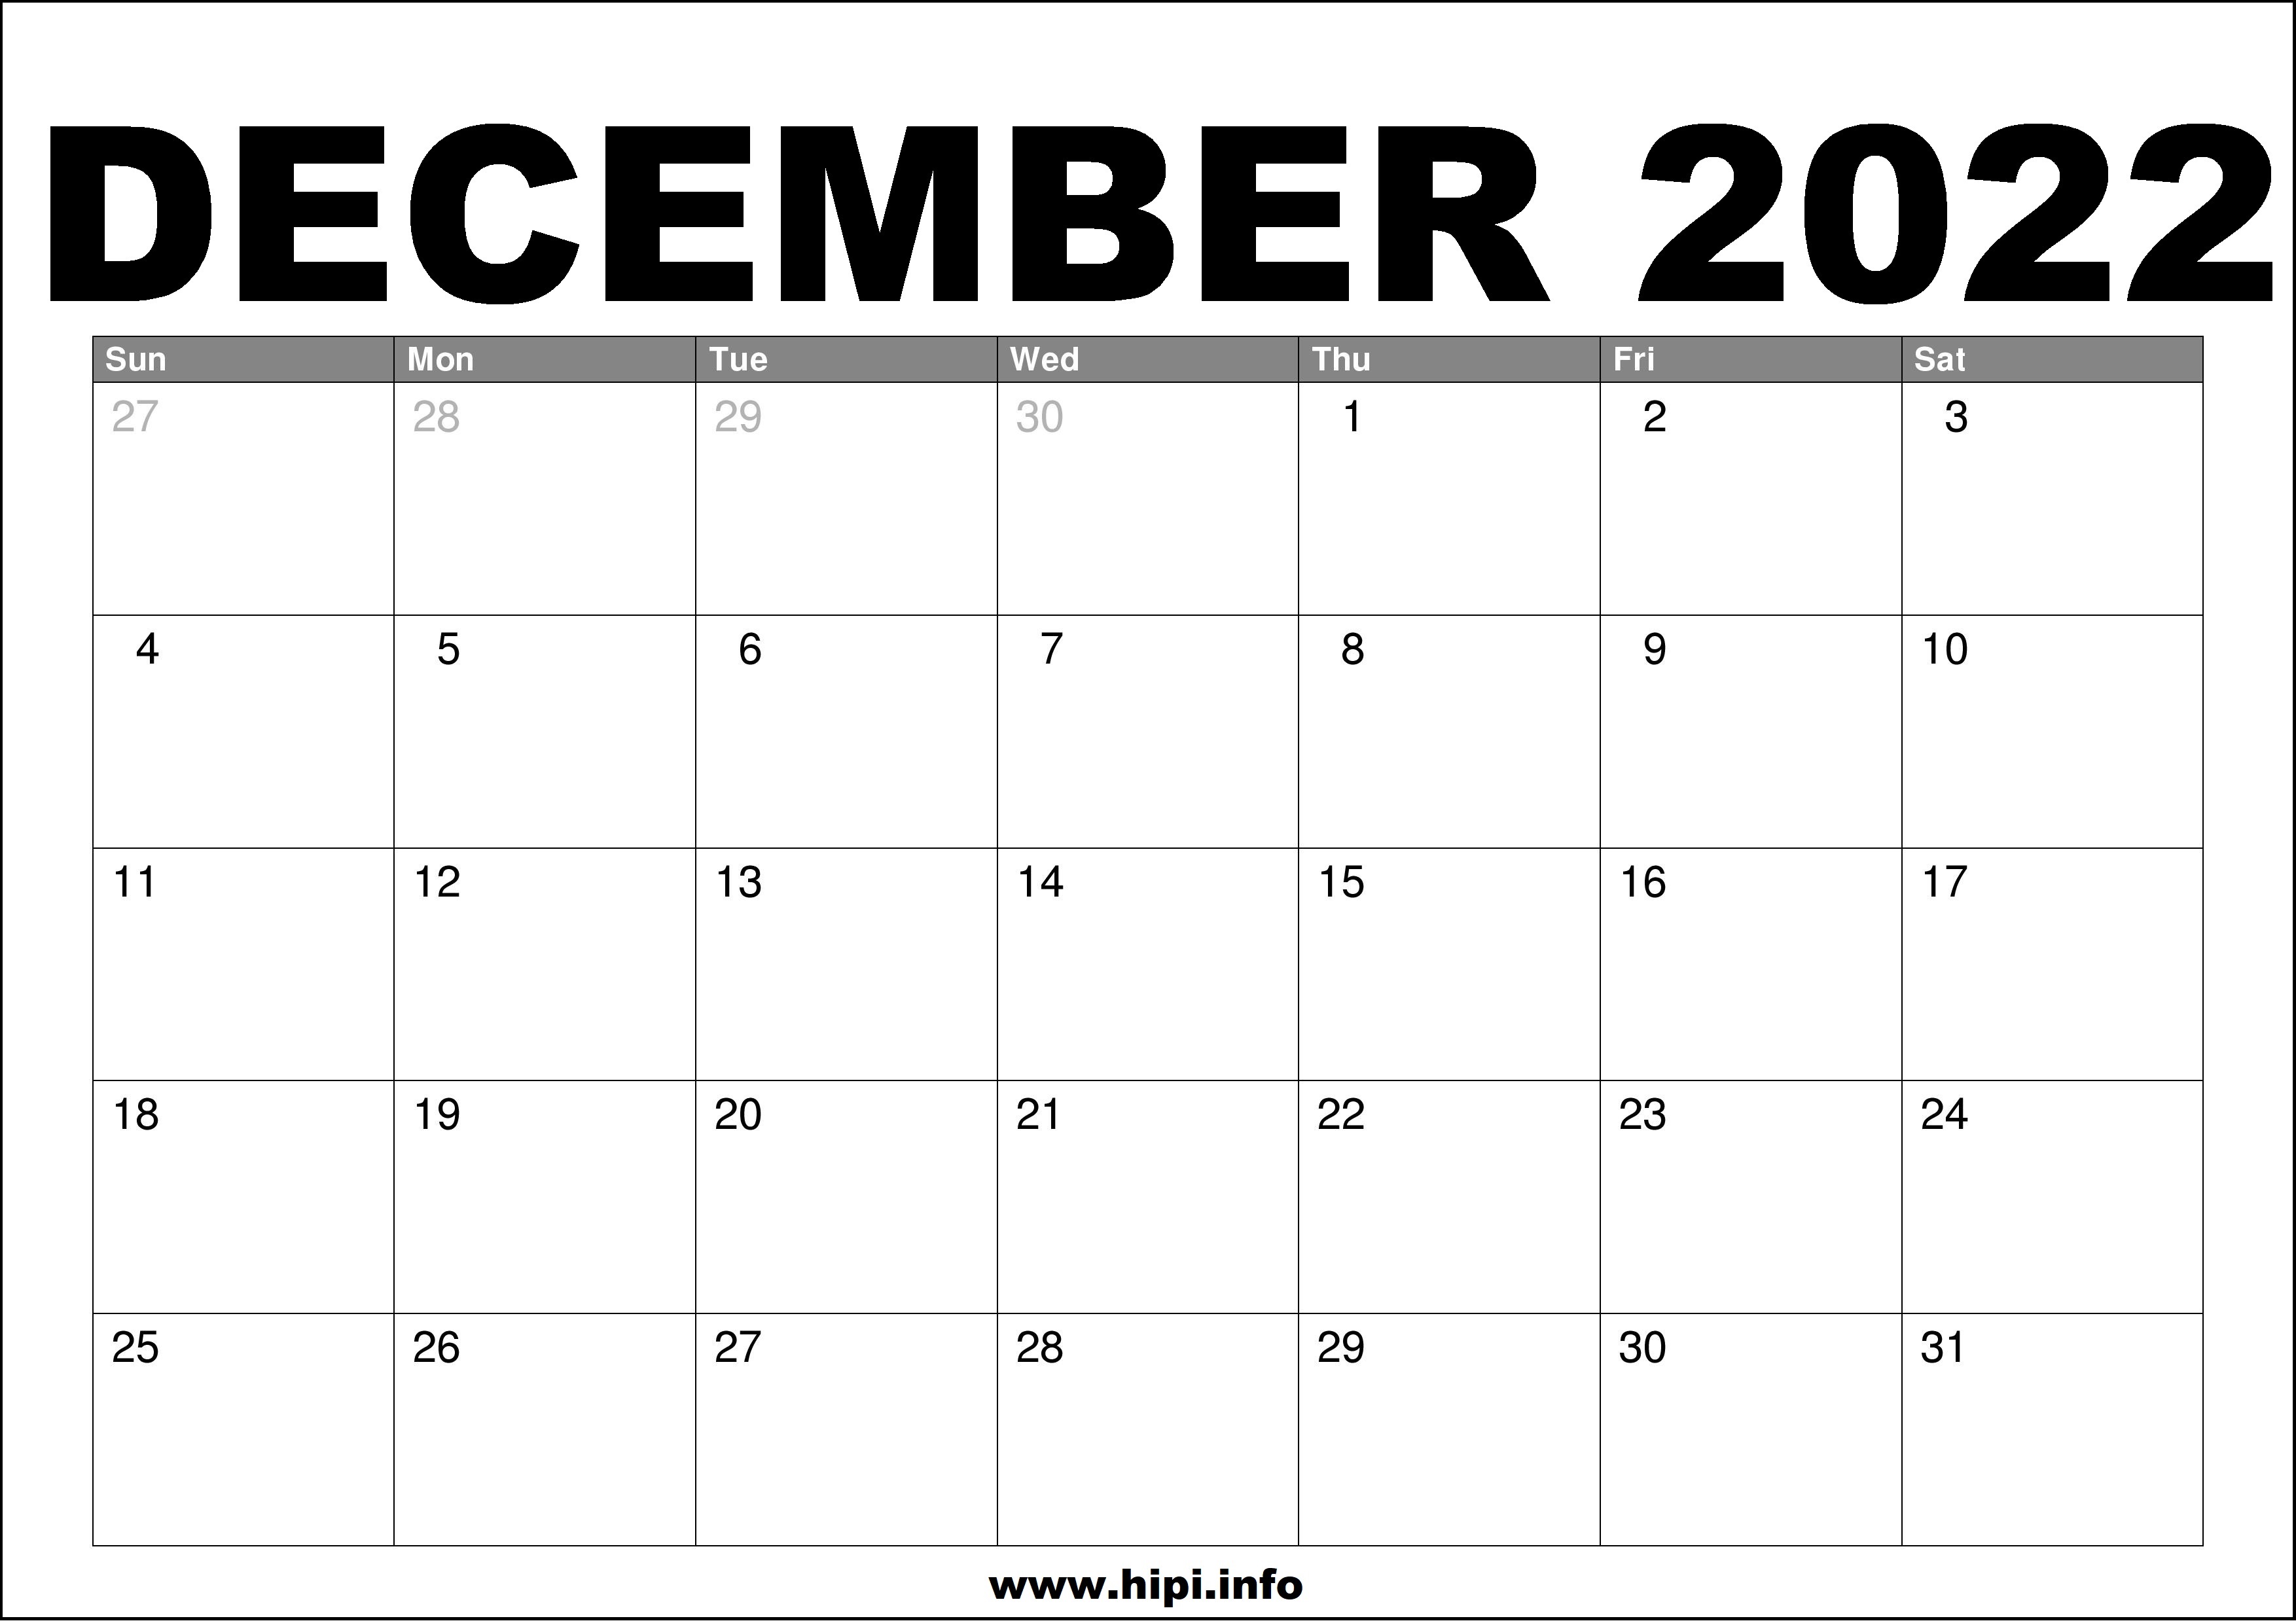 December 2022 Calendar Printable Free Hipi info